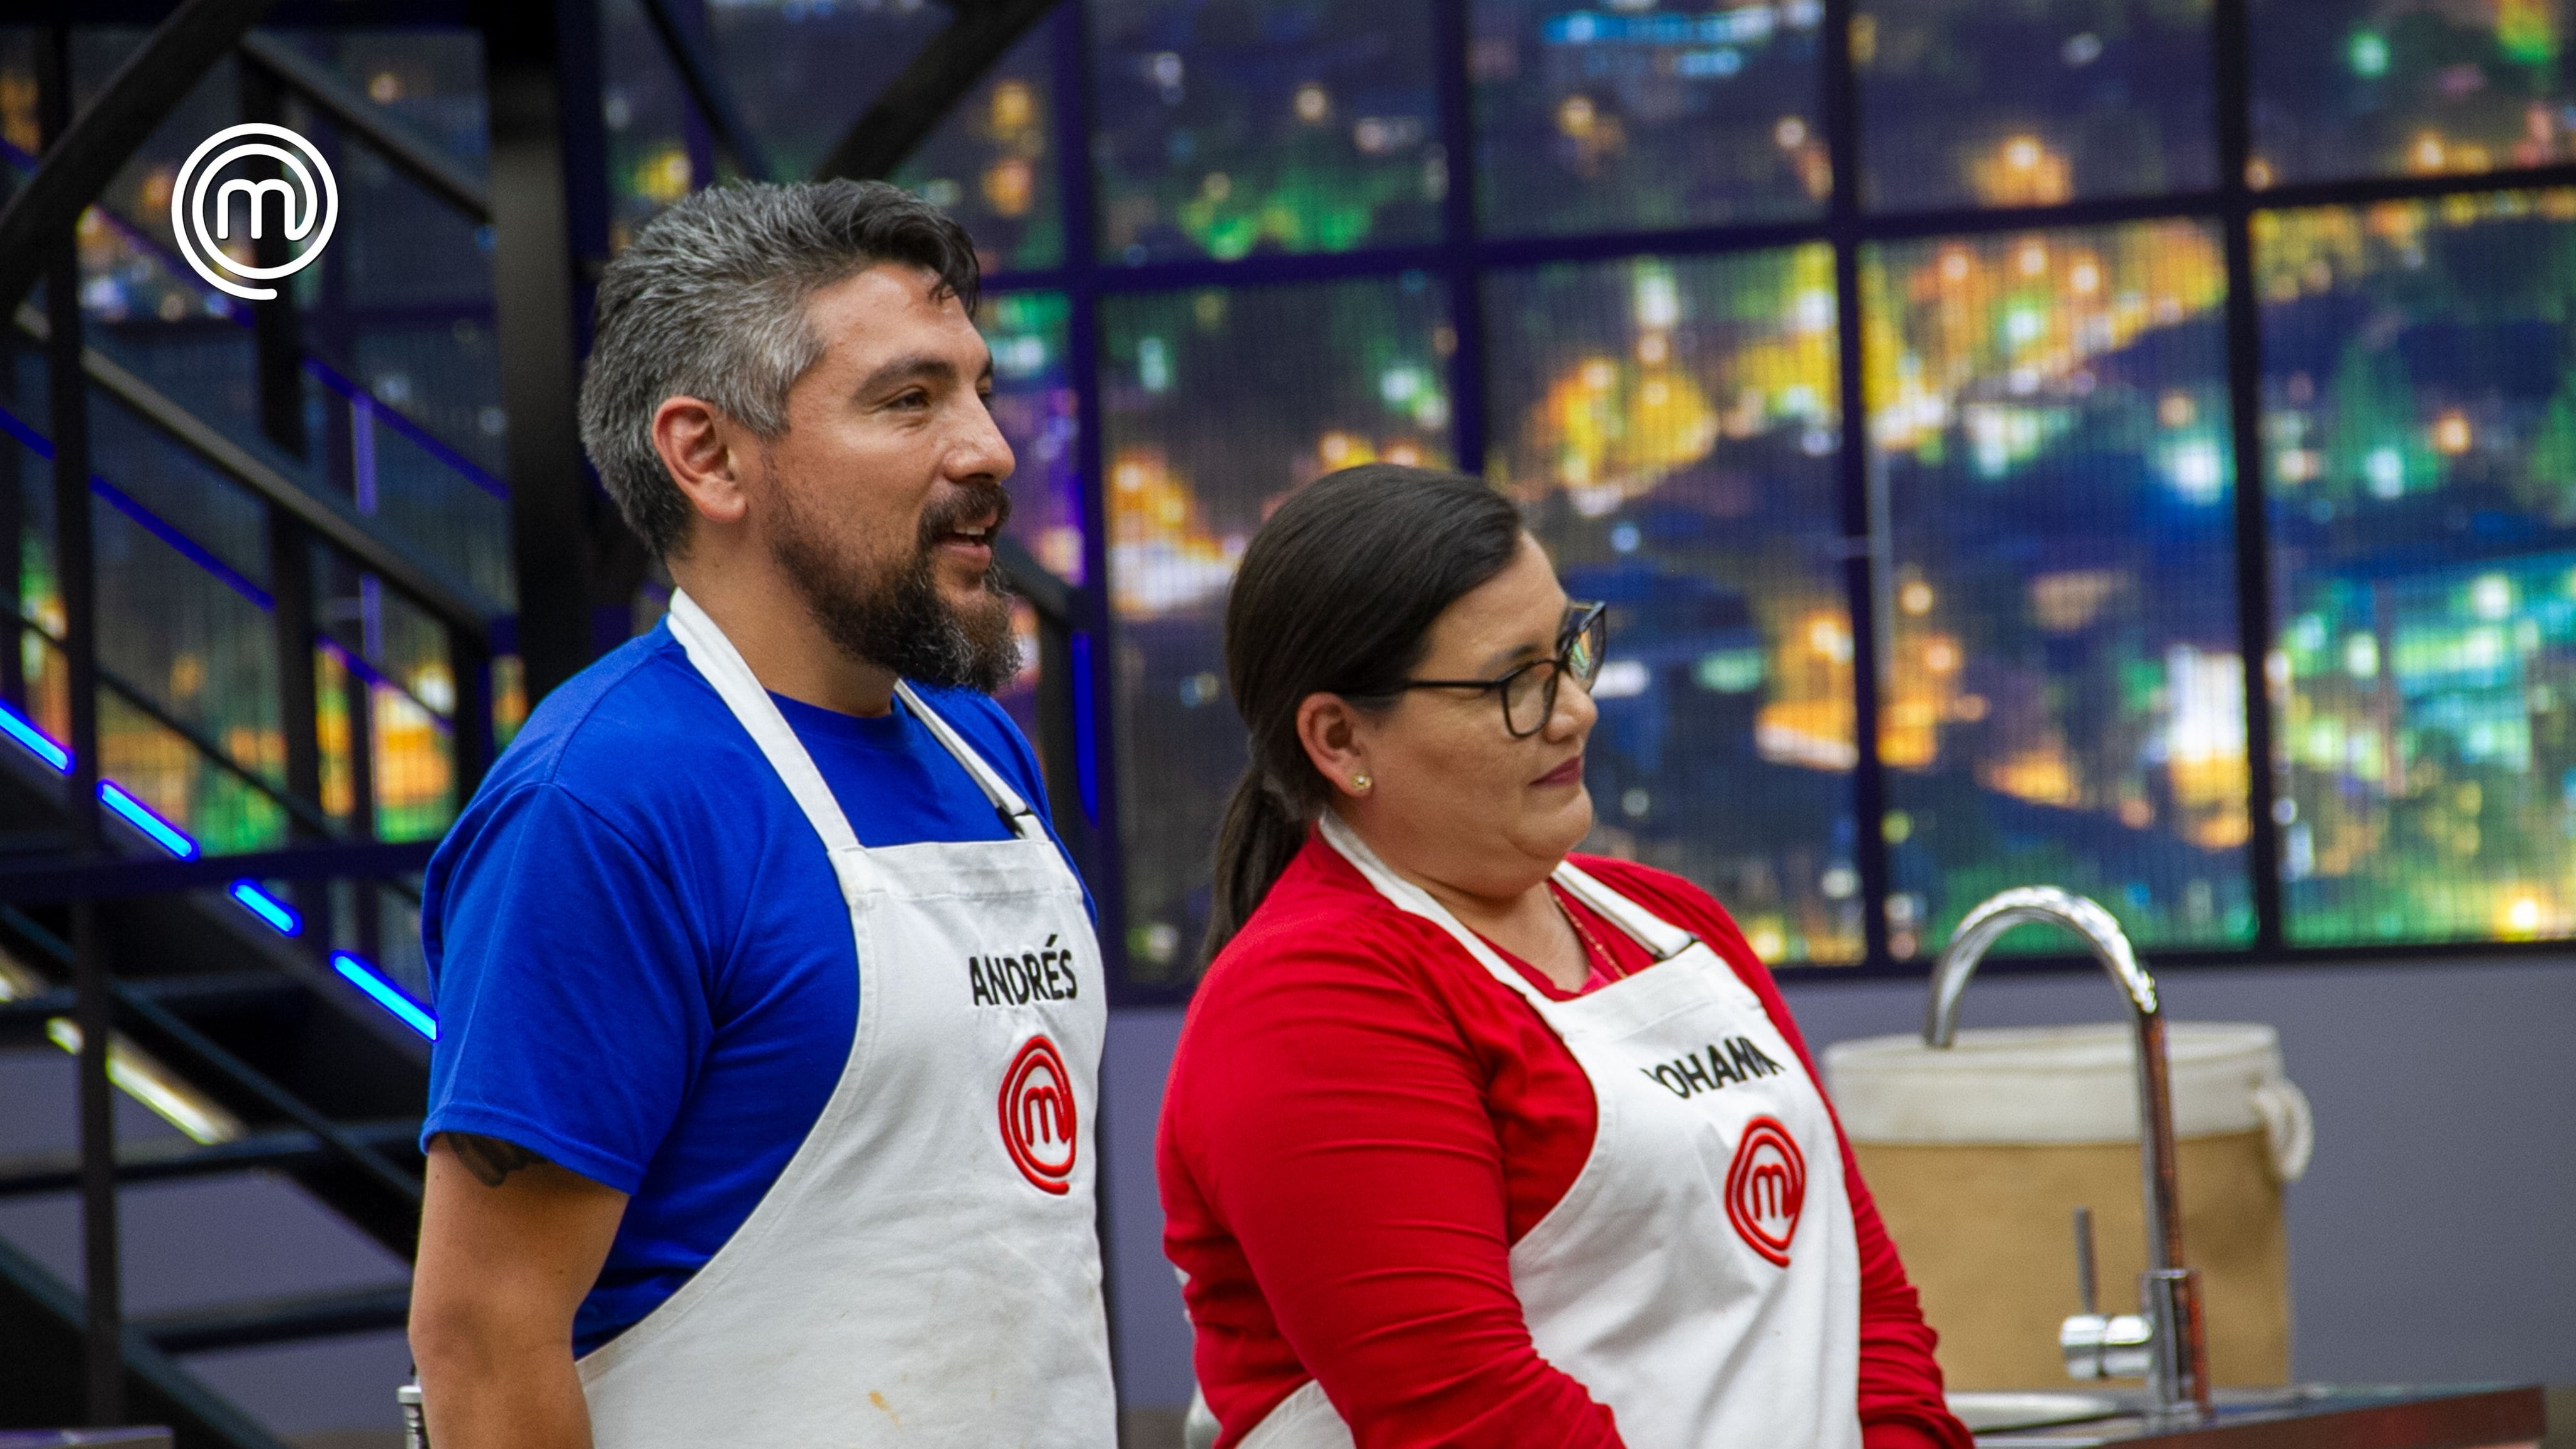 Andrés y Johanna listos para enfrentarse por el pin de chef